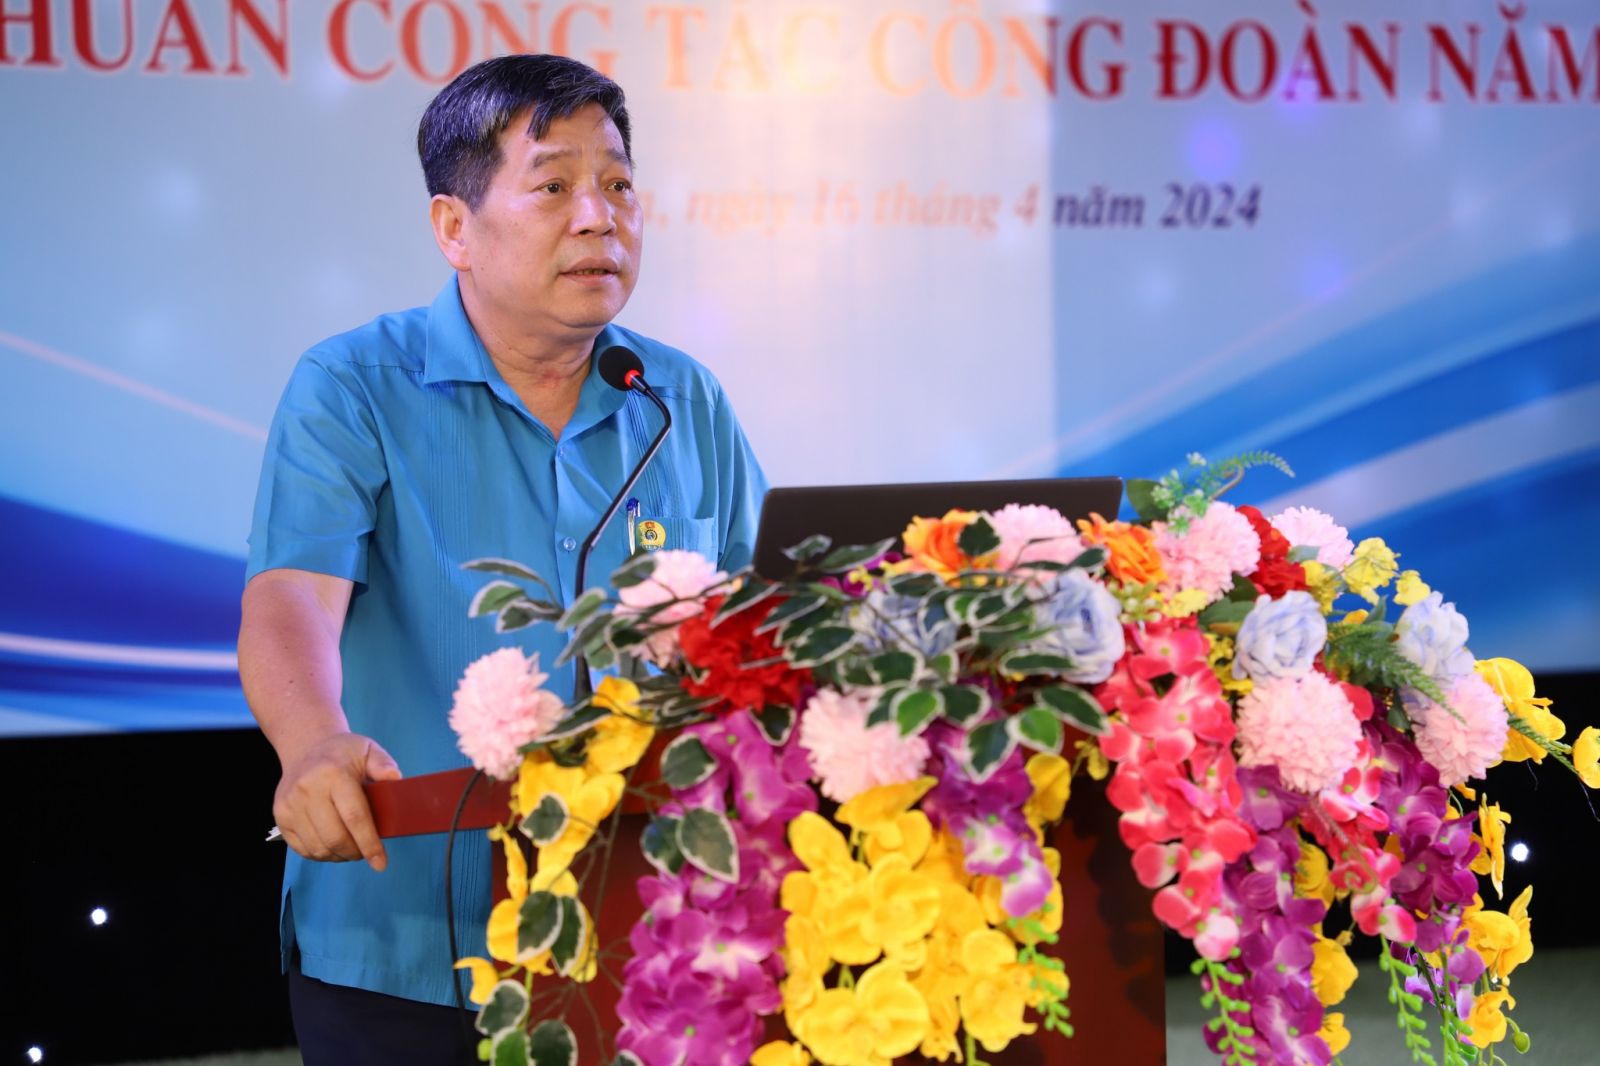 Đồng chí Nguyễn Văn Đông - Phó Chủ tịch Thường trực Công đoàn Viên chức Việt Nam trình bày chuyên đề một số kỹ năng, phương pháp hoạt động công đoàn trong tình hình mới